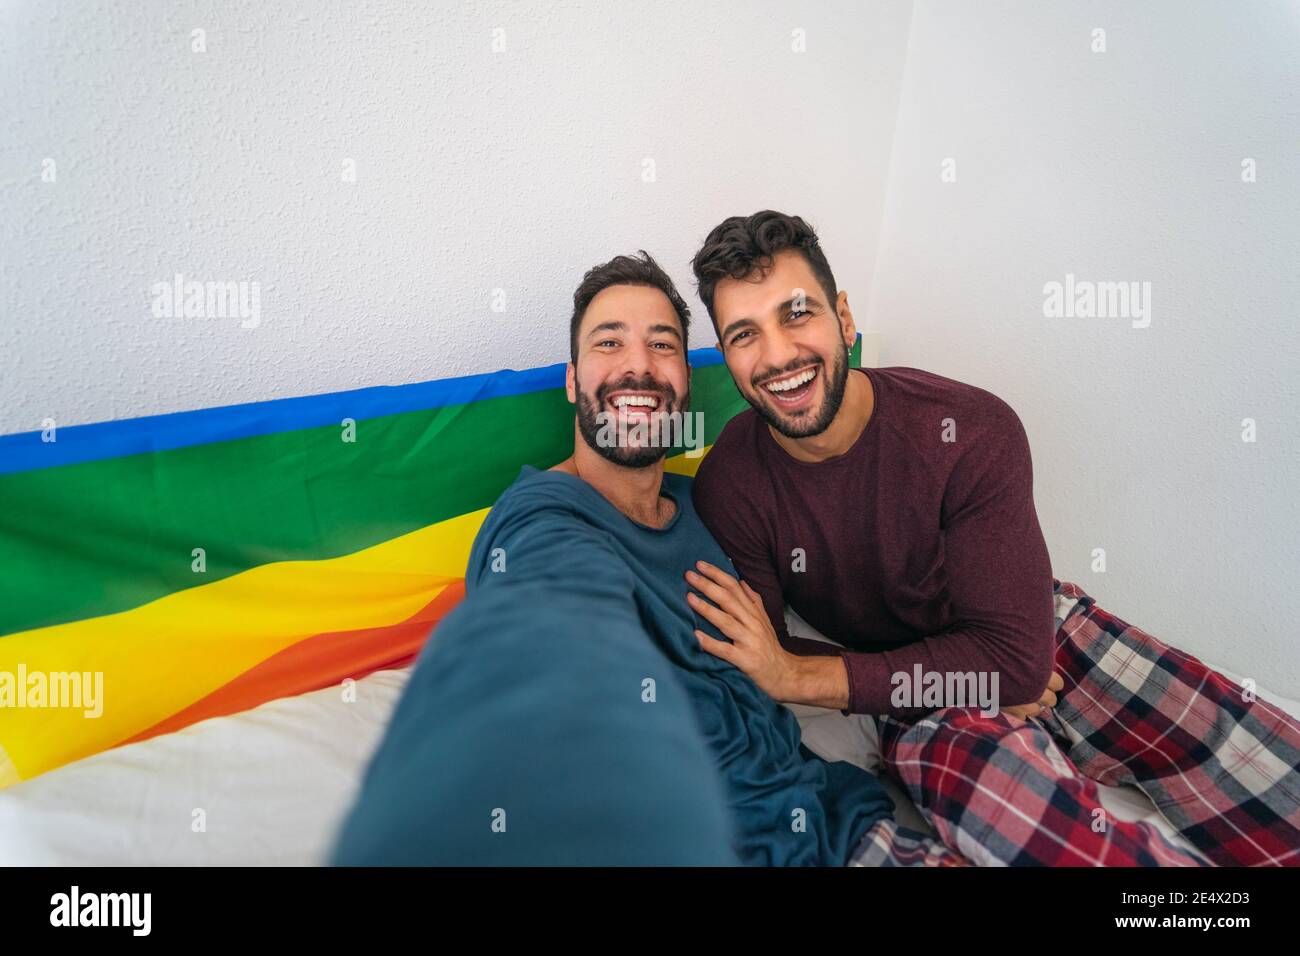 Glücklich Gay paar mit Spaß nehmen Selfie im Bett - Homosexuelle Liebe und Technologie Konzept Stockfoto